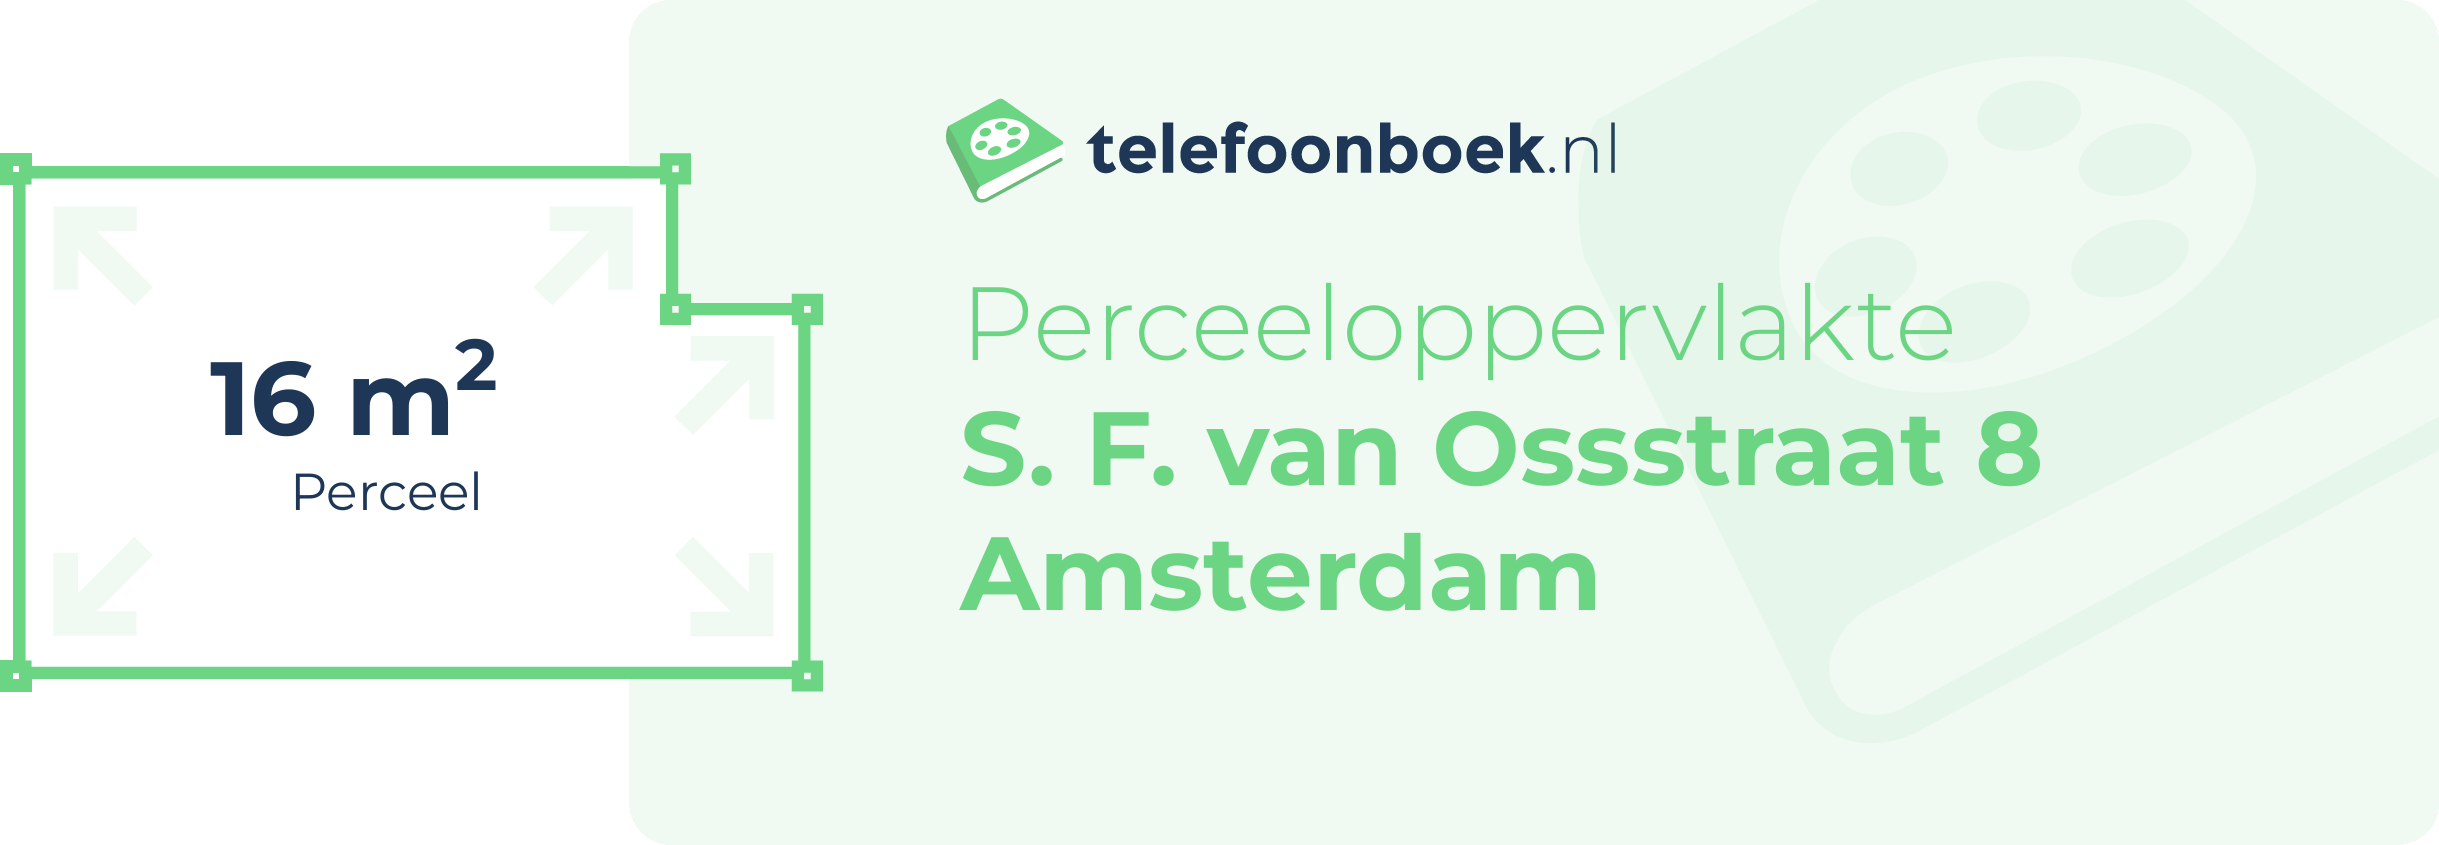 Perceeloppervlakte S. F. Van Ossstraat 8 Amsterdam